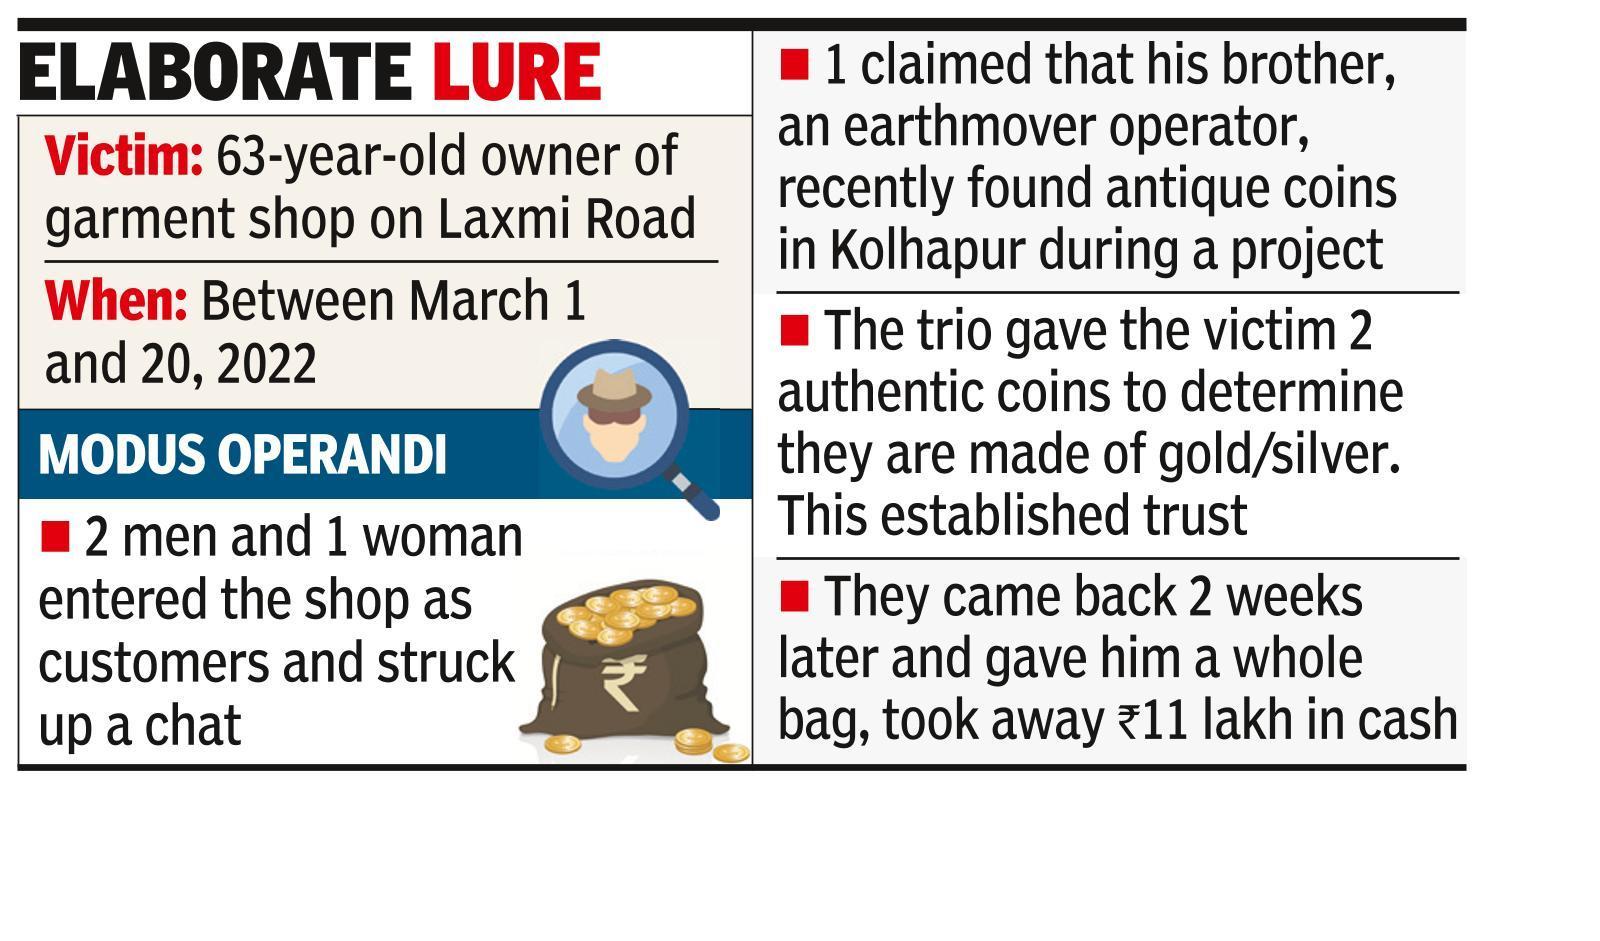 Garment shop owner loses 11 lakh to antique coins bait